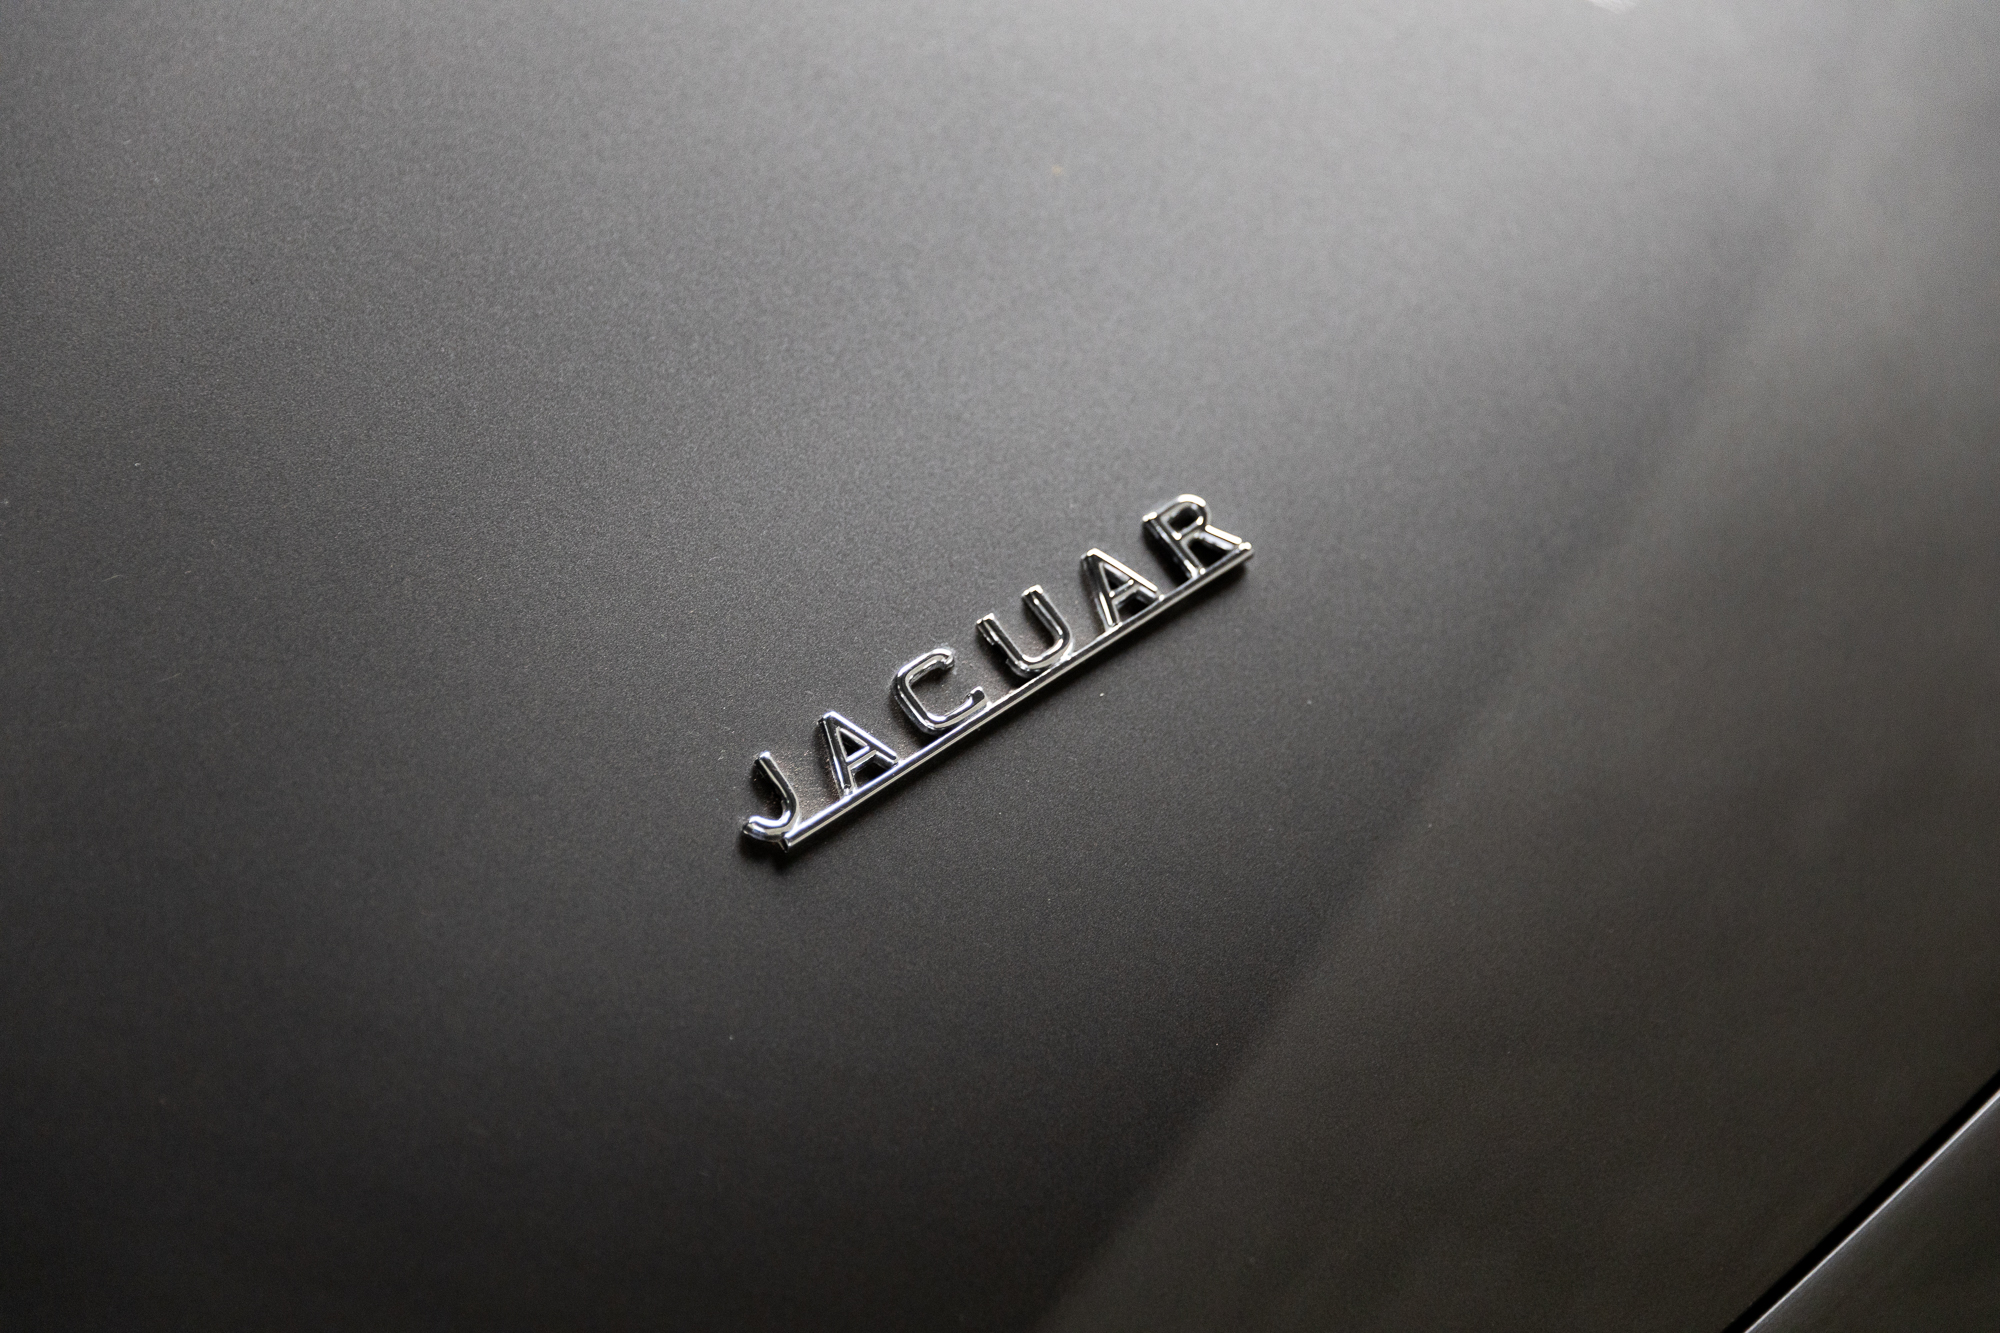 1961-Jaguar-EType-OBL-for-sale-DriveCity-Sales-72dpi-9